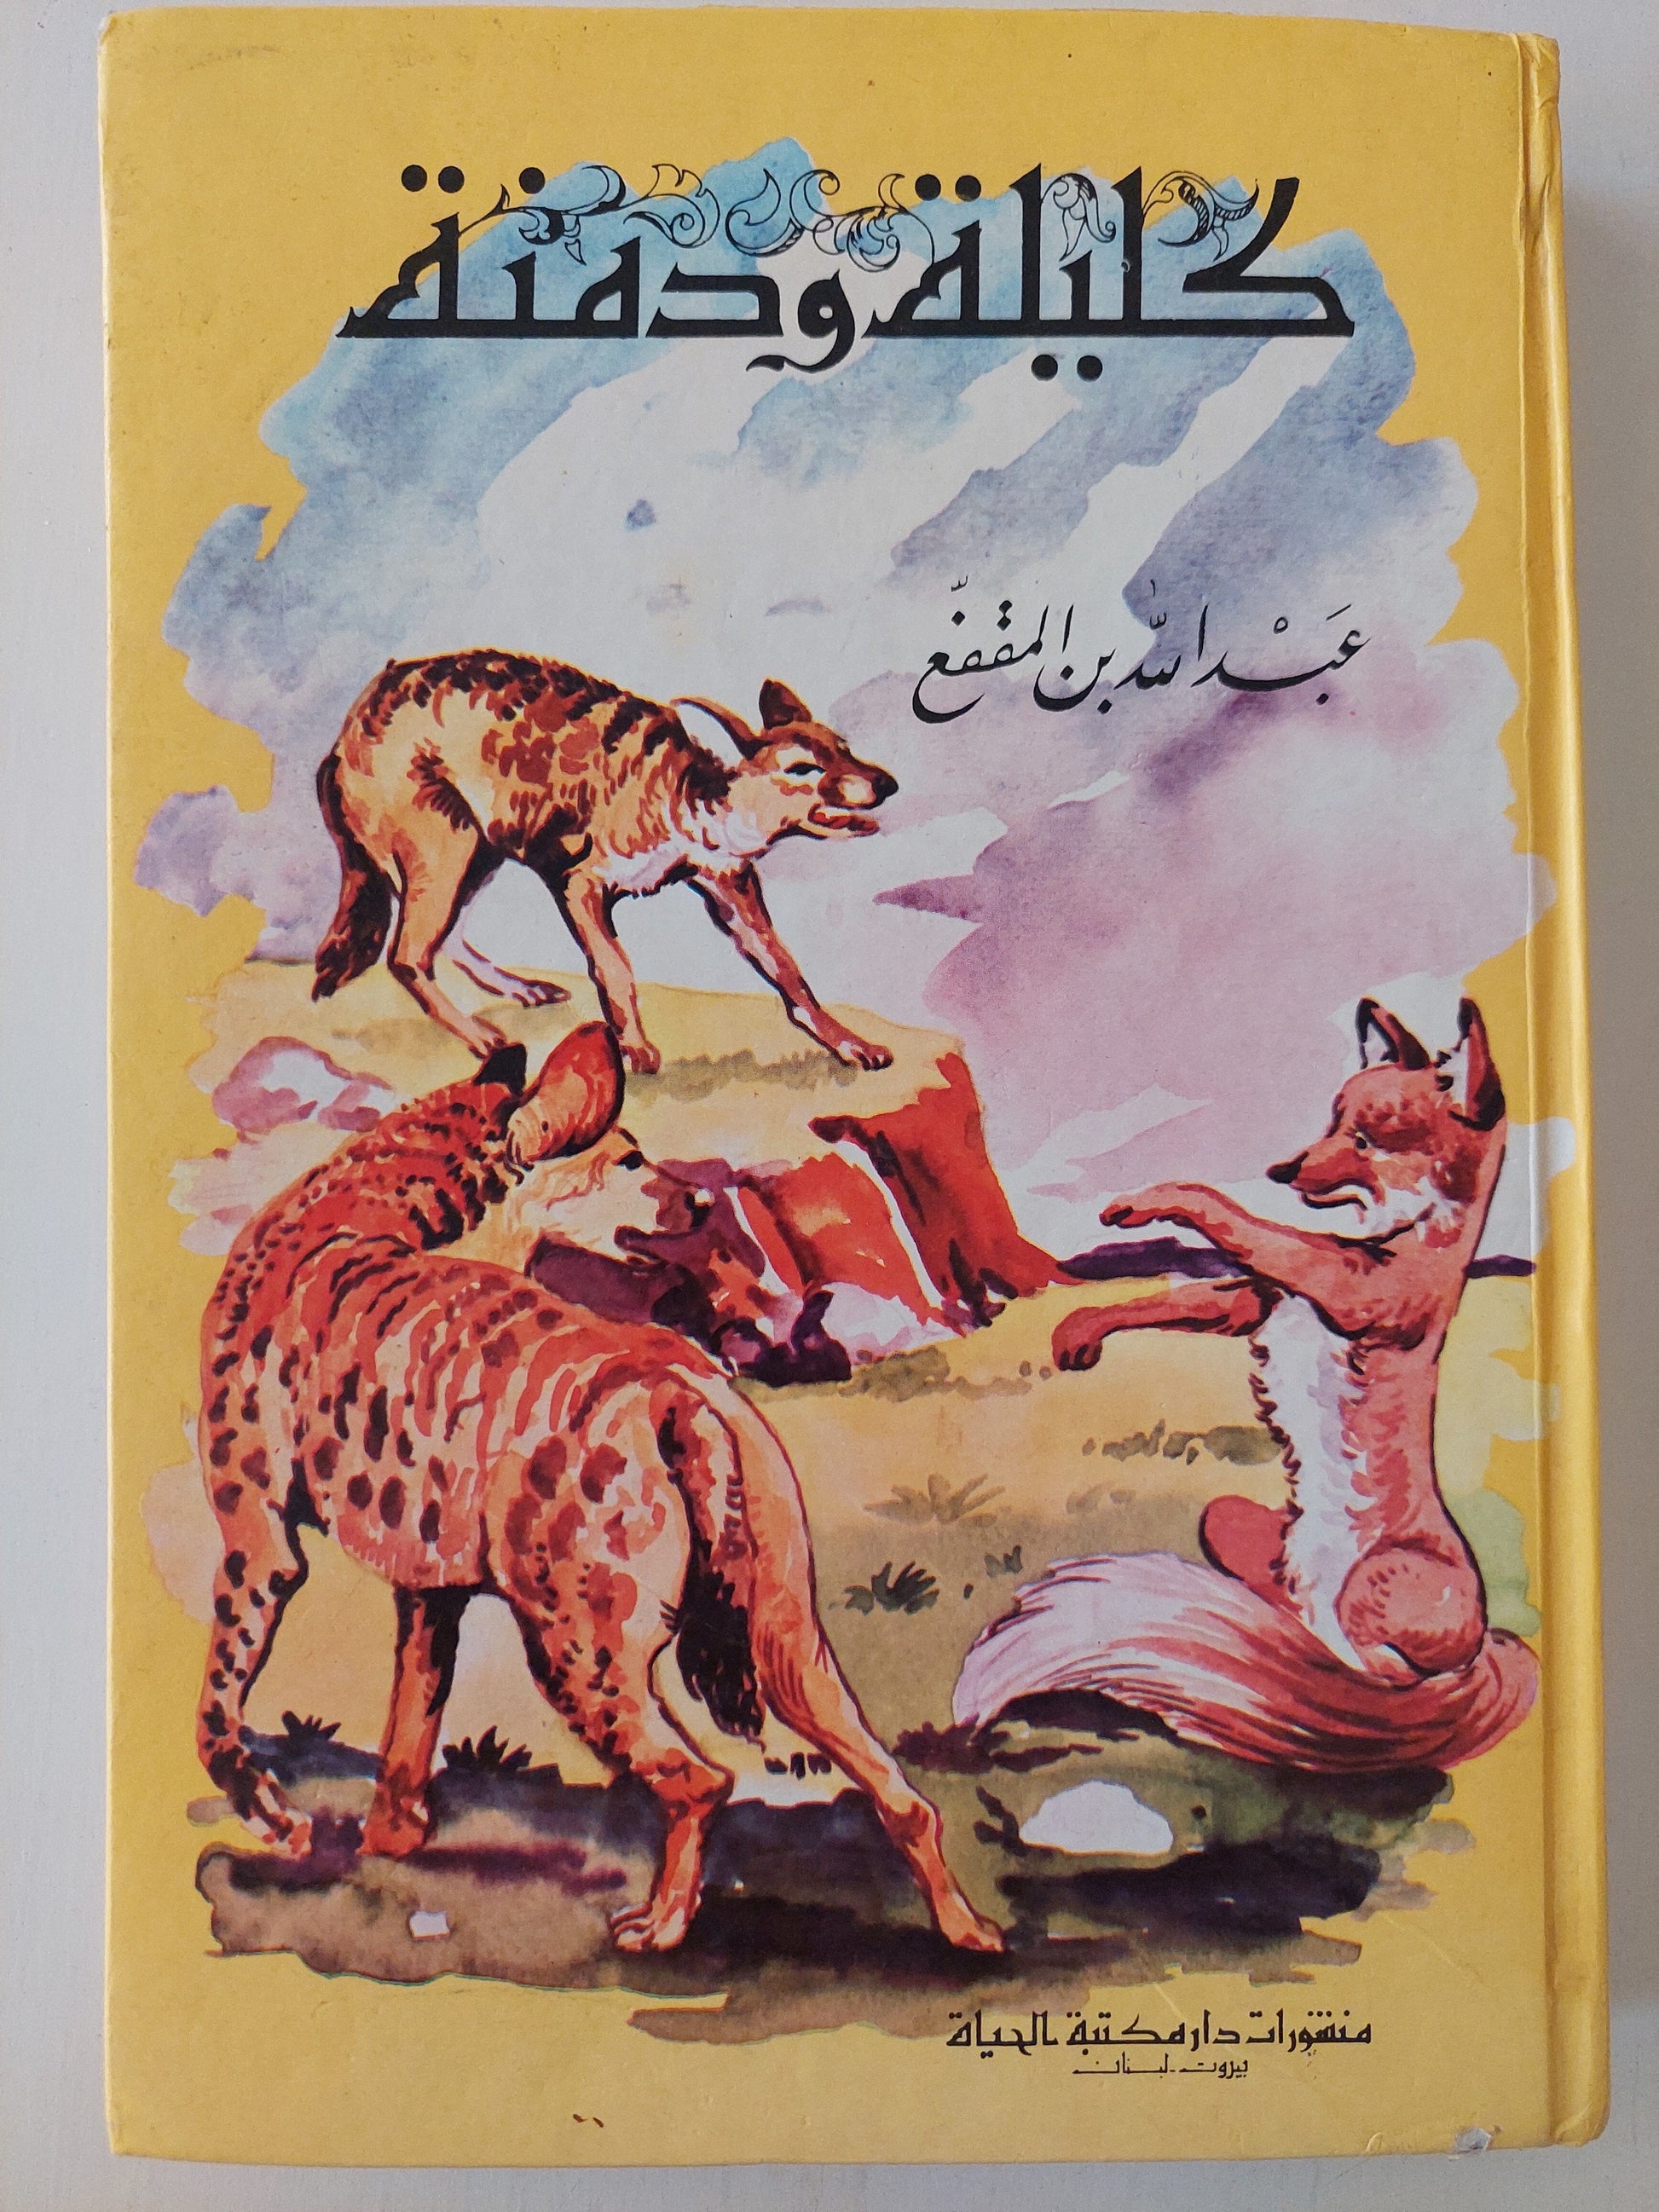 كليلة ودمنة - عبد الله بن المقفع (هاردكڤر) كتاب المكتبة الفلسفية 